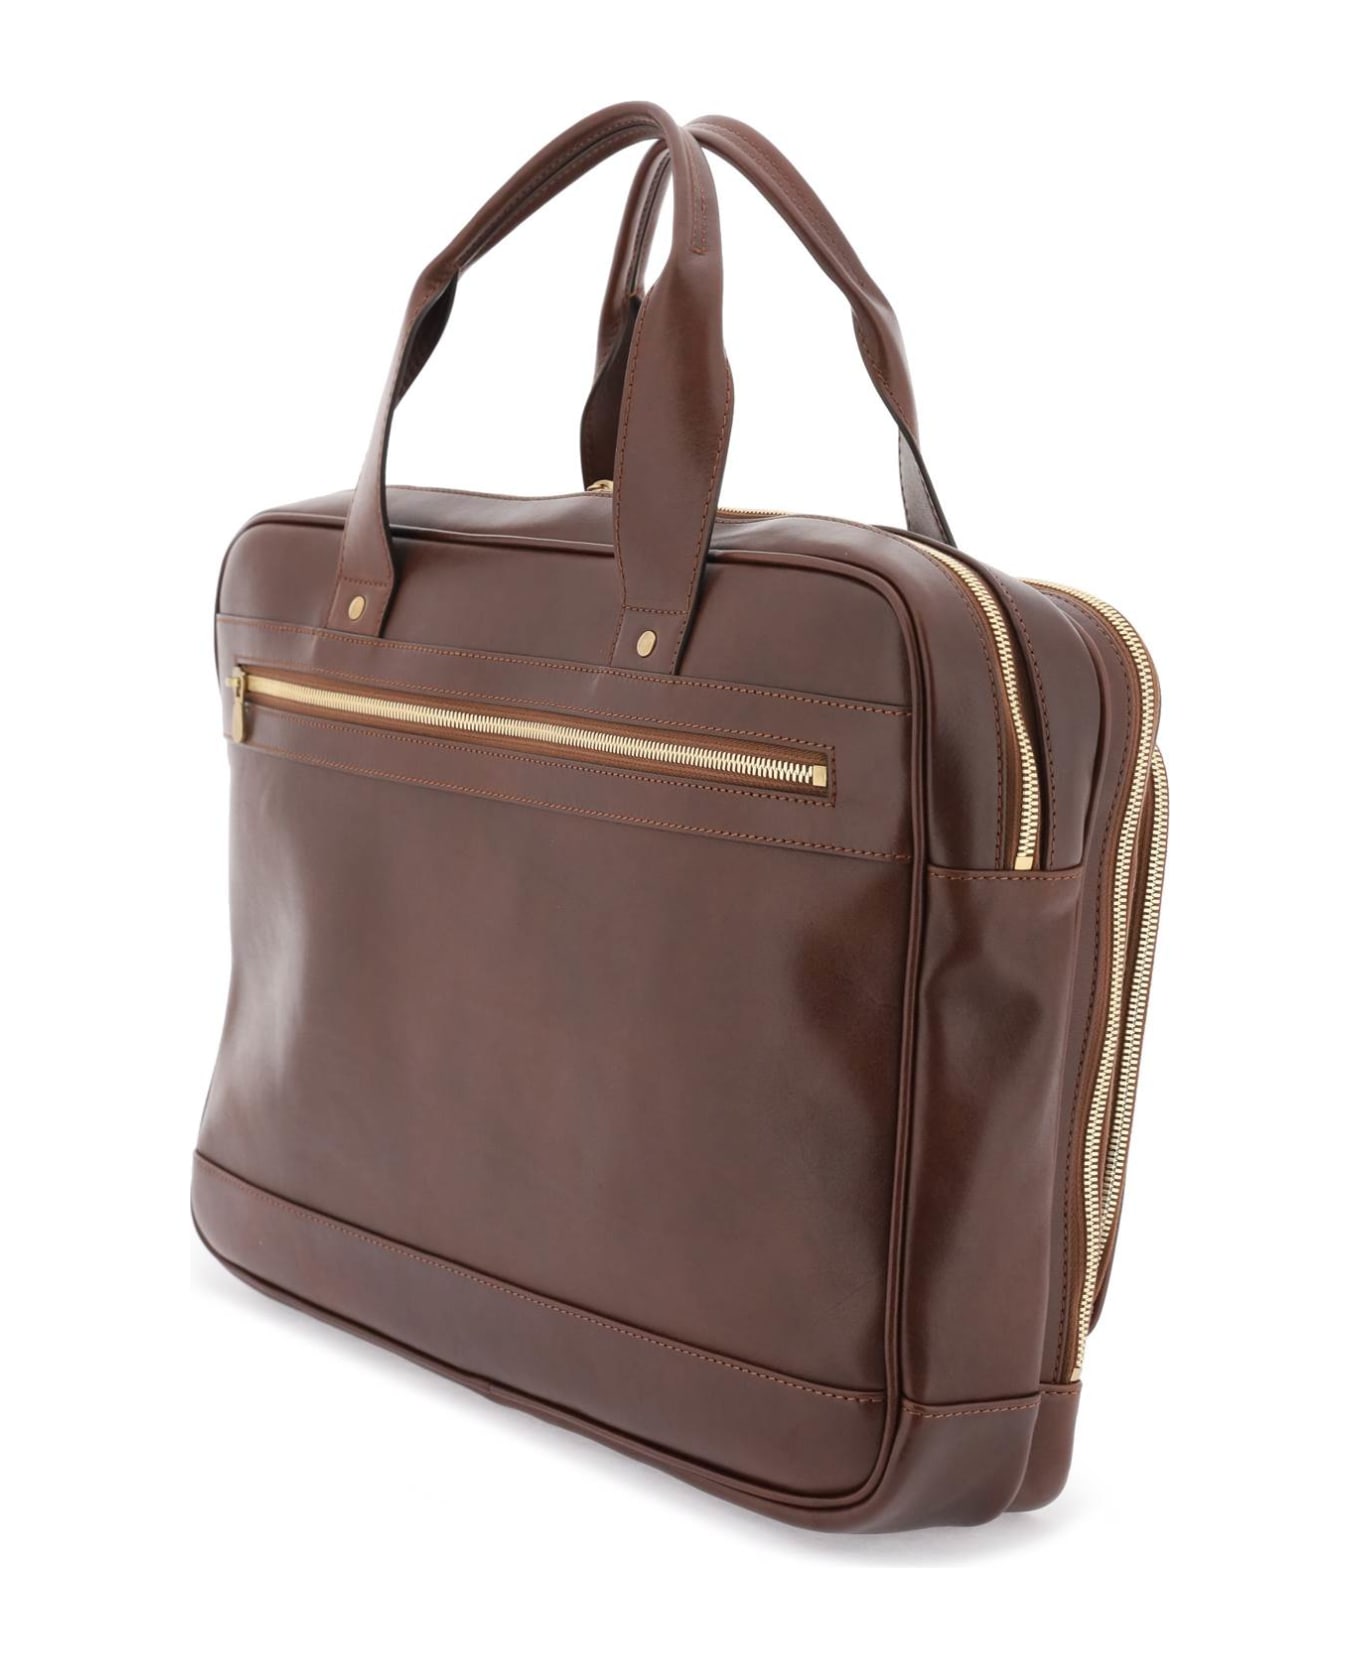 Brunello Cucinelli Leather Handbag - BURGUNDY (Brown)